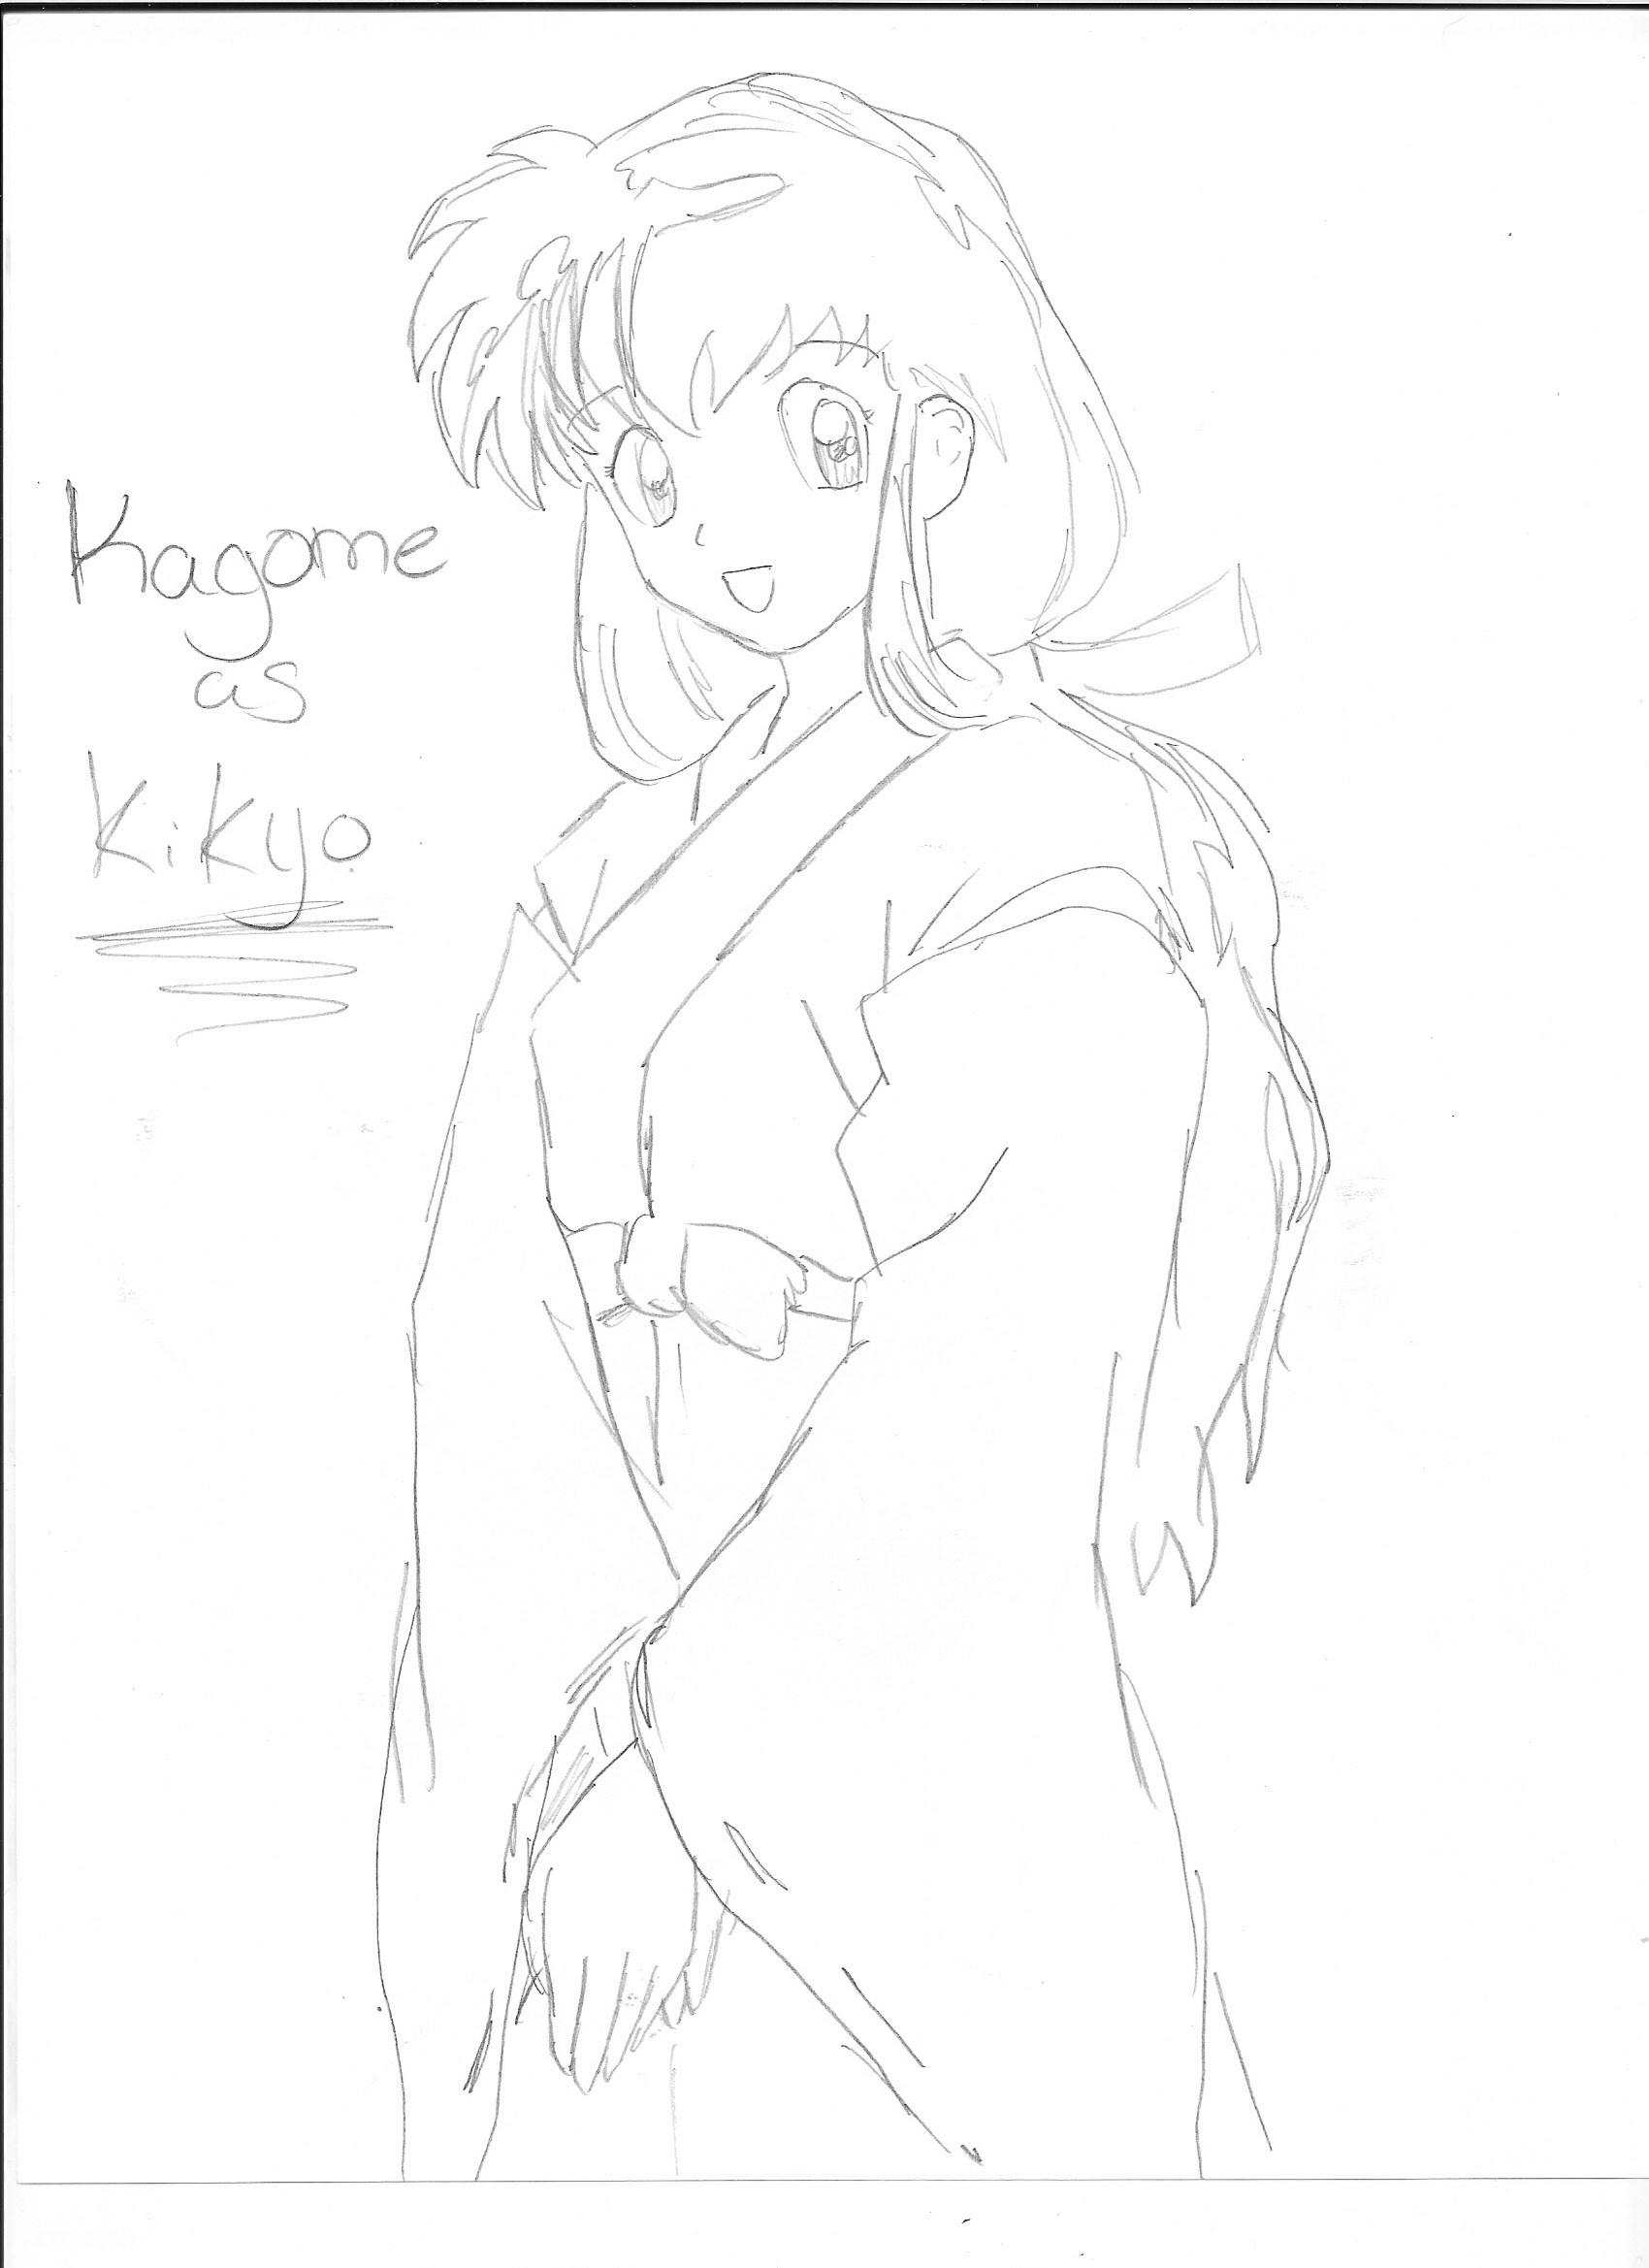 Kagome as Kikyo by Kimikoprincesspancho